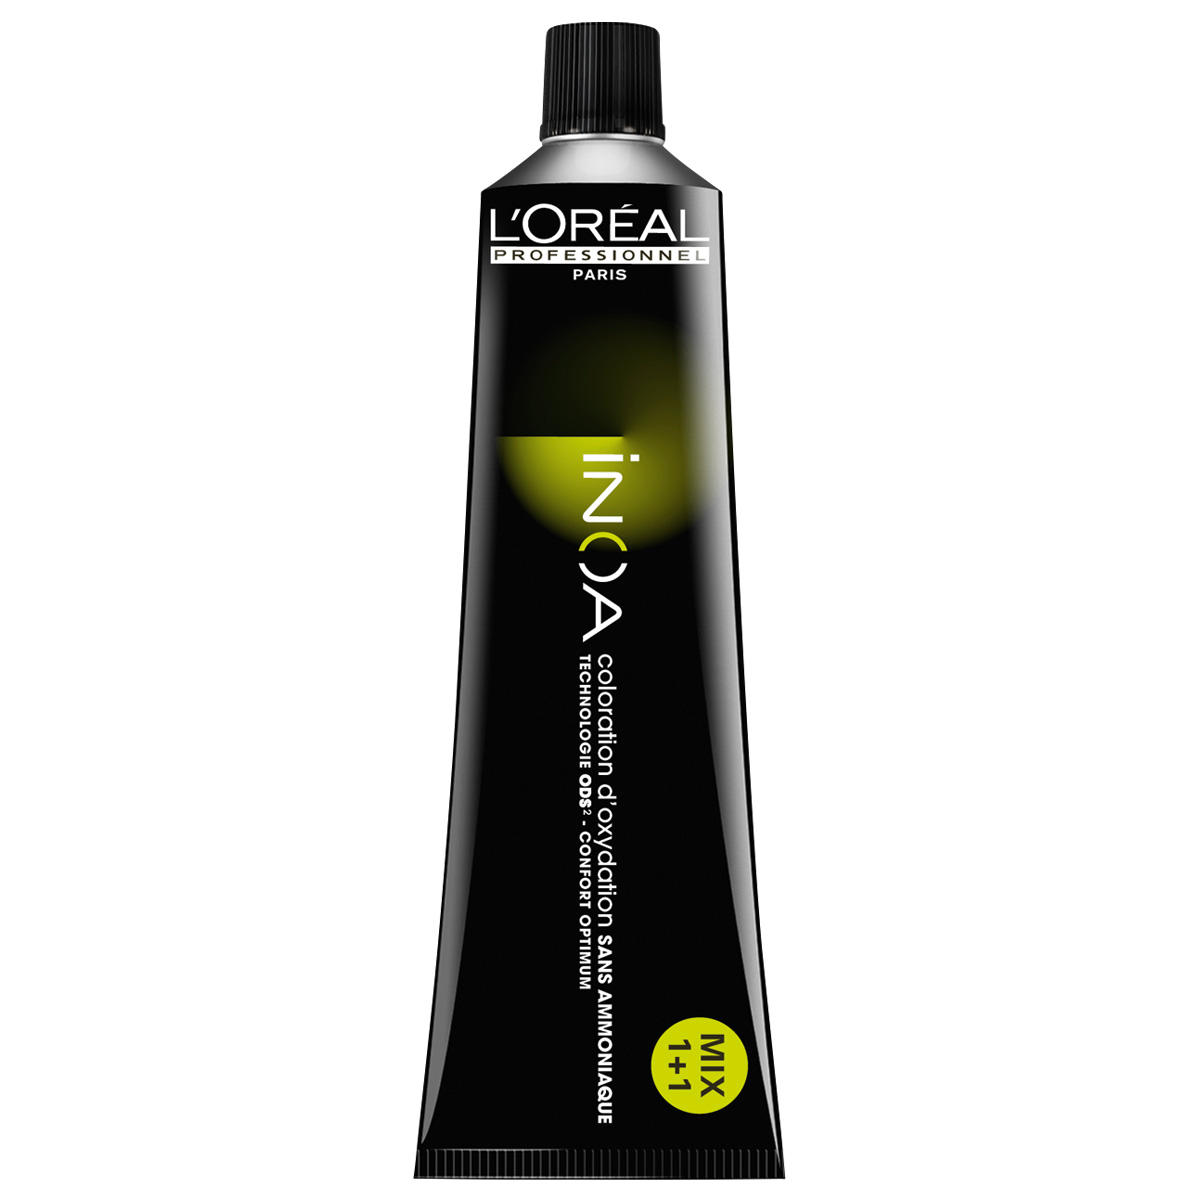 L'Oréal Professionnel Paris Coloration 7.34 Medium Blond Goud Koper, Tube 60 ml - 1